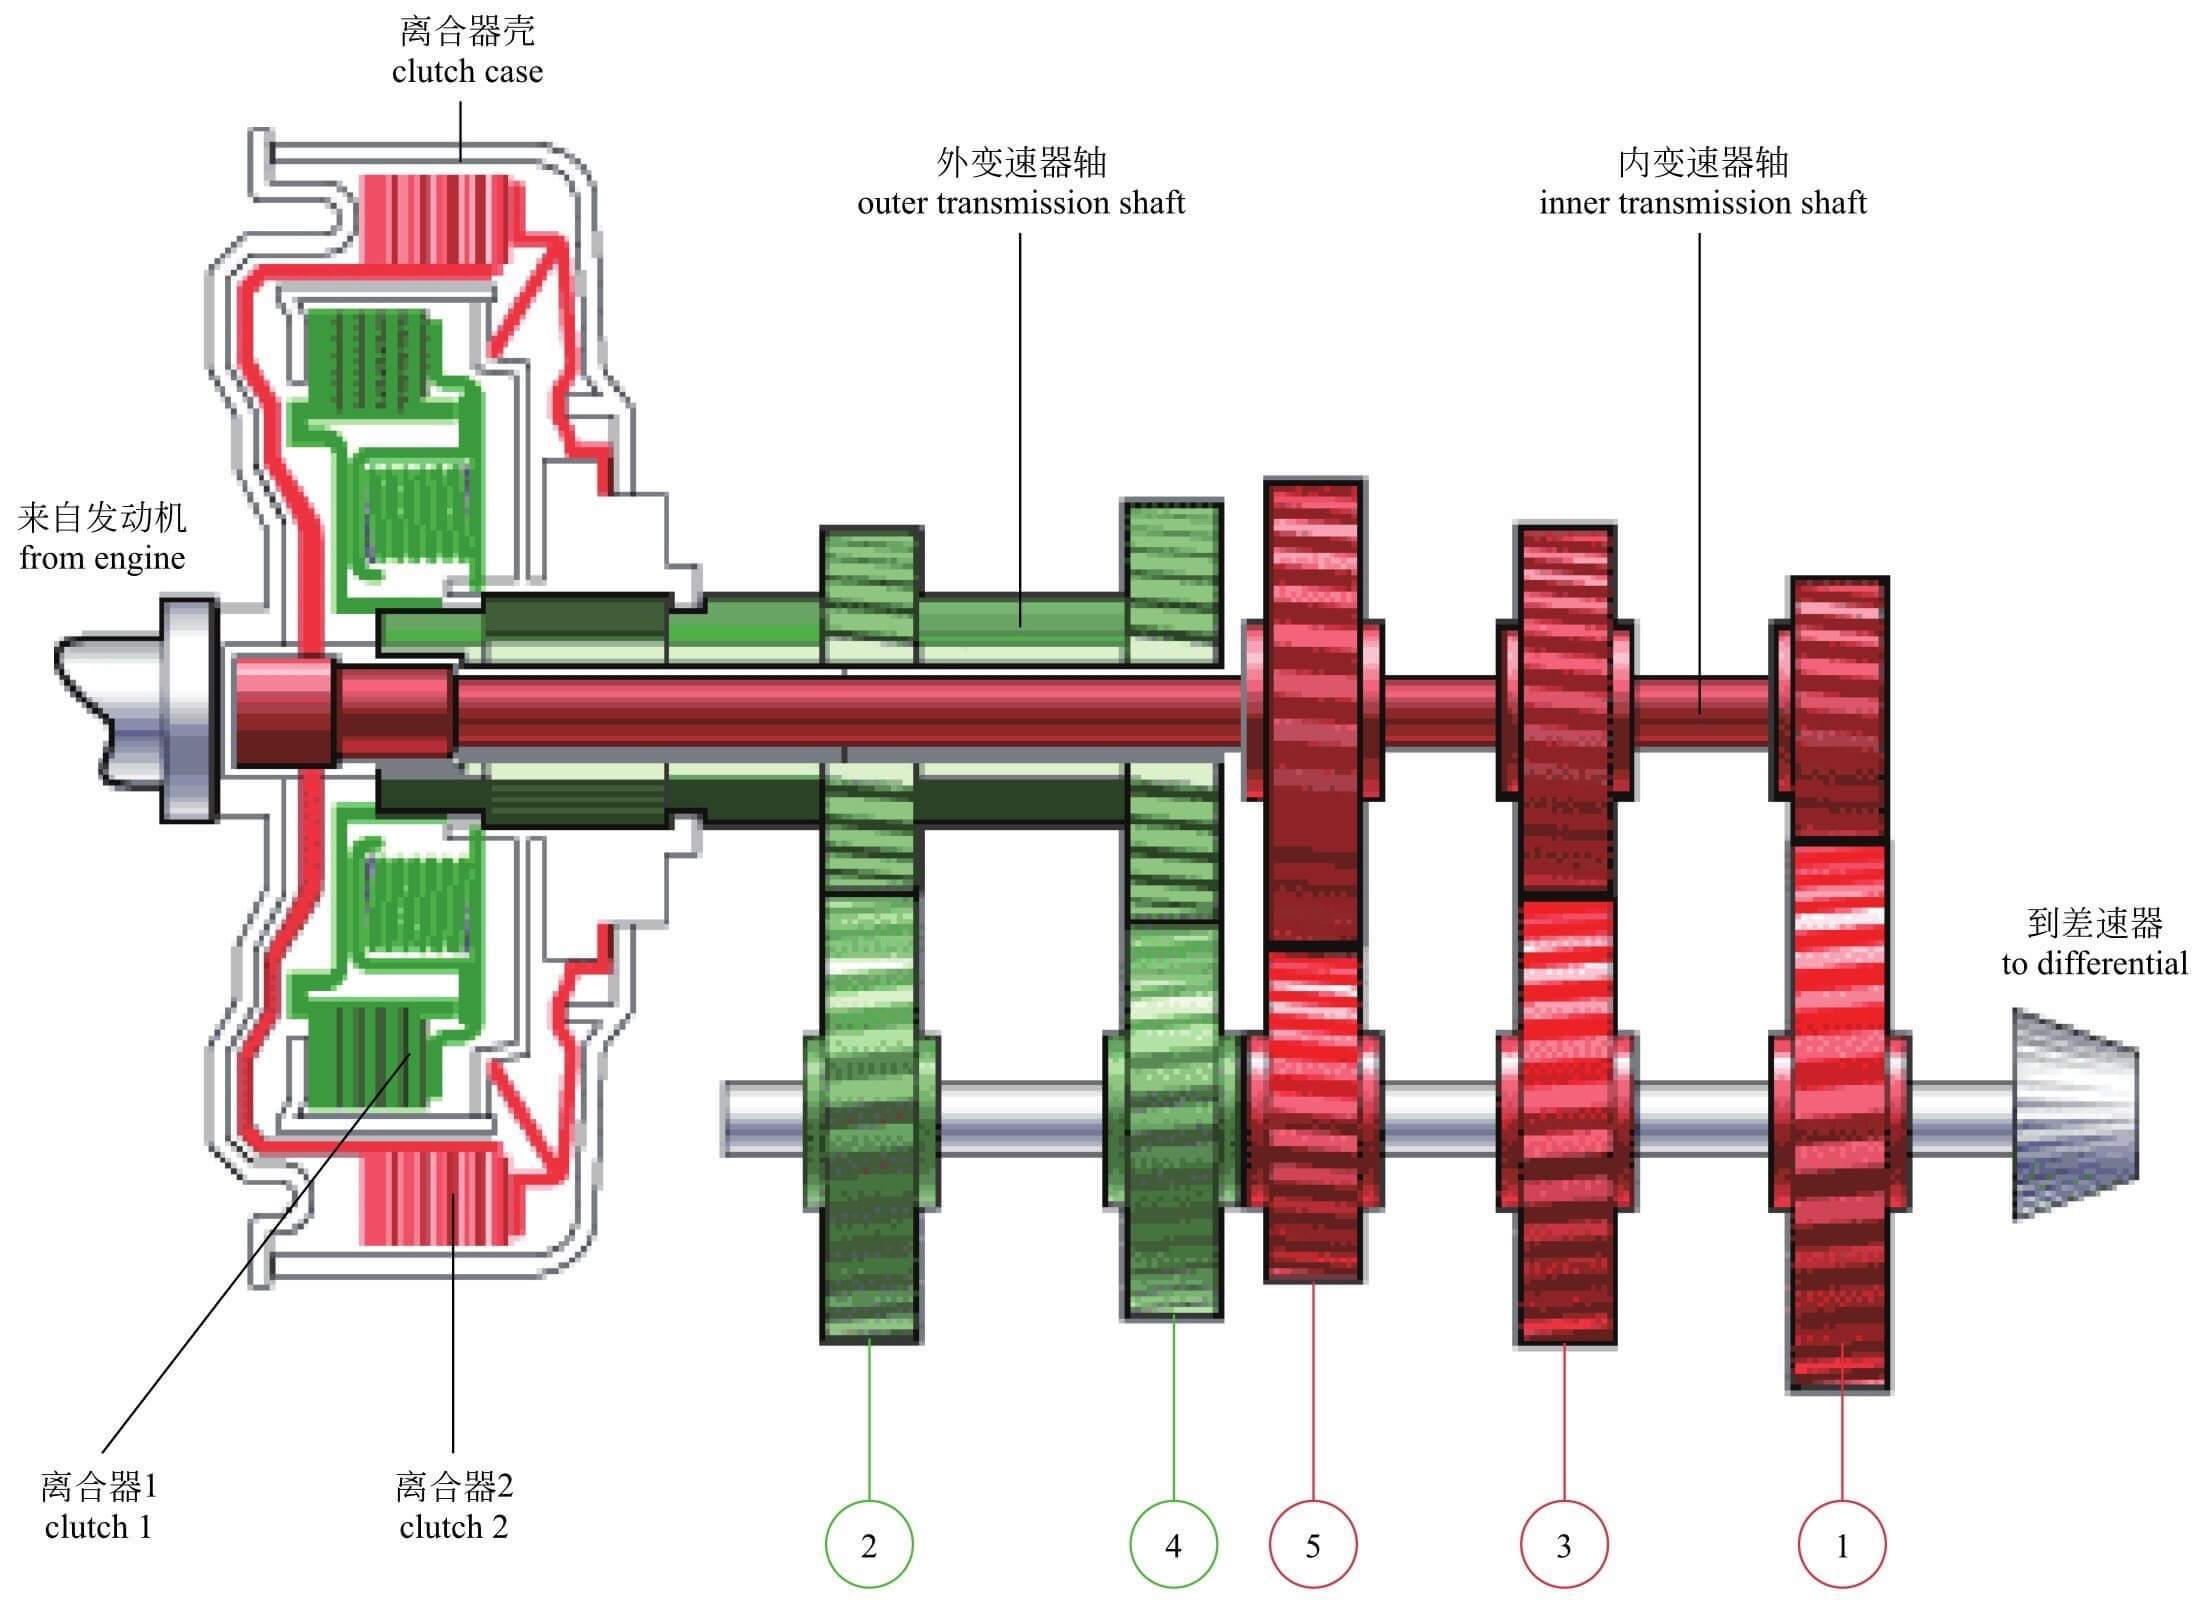 双离合器变速器基本结构双离合器变速器有两组离合器,分别由电子控制